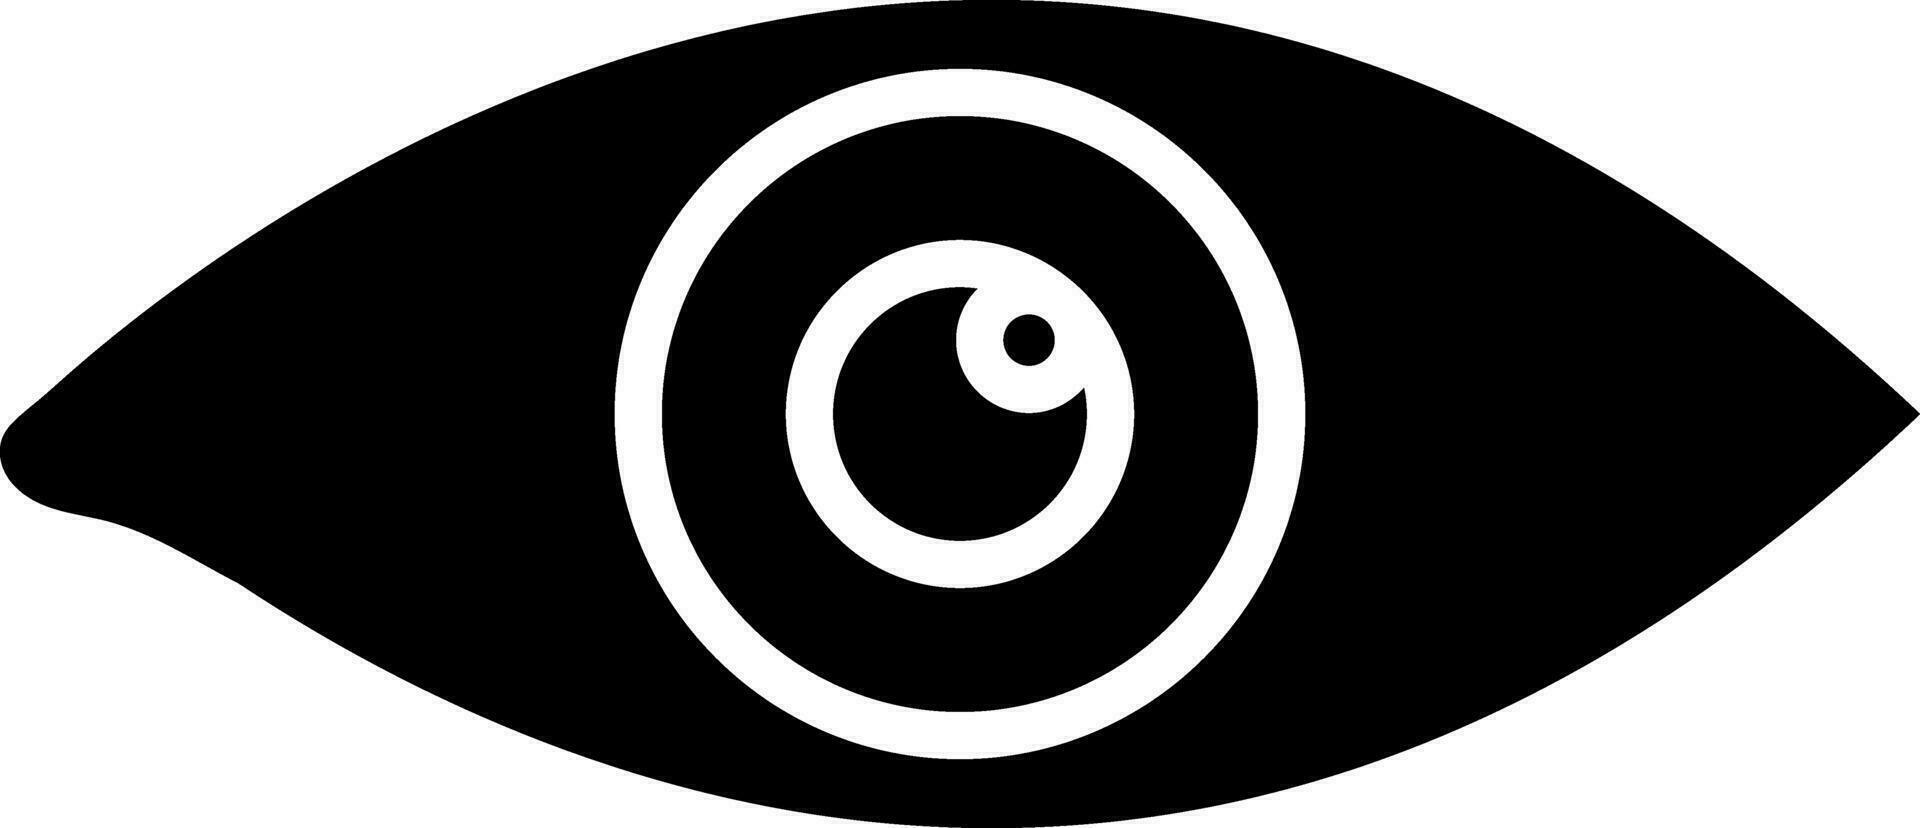 Preto e branco ilustração do olho placa ou símbolo. vetor